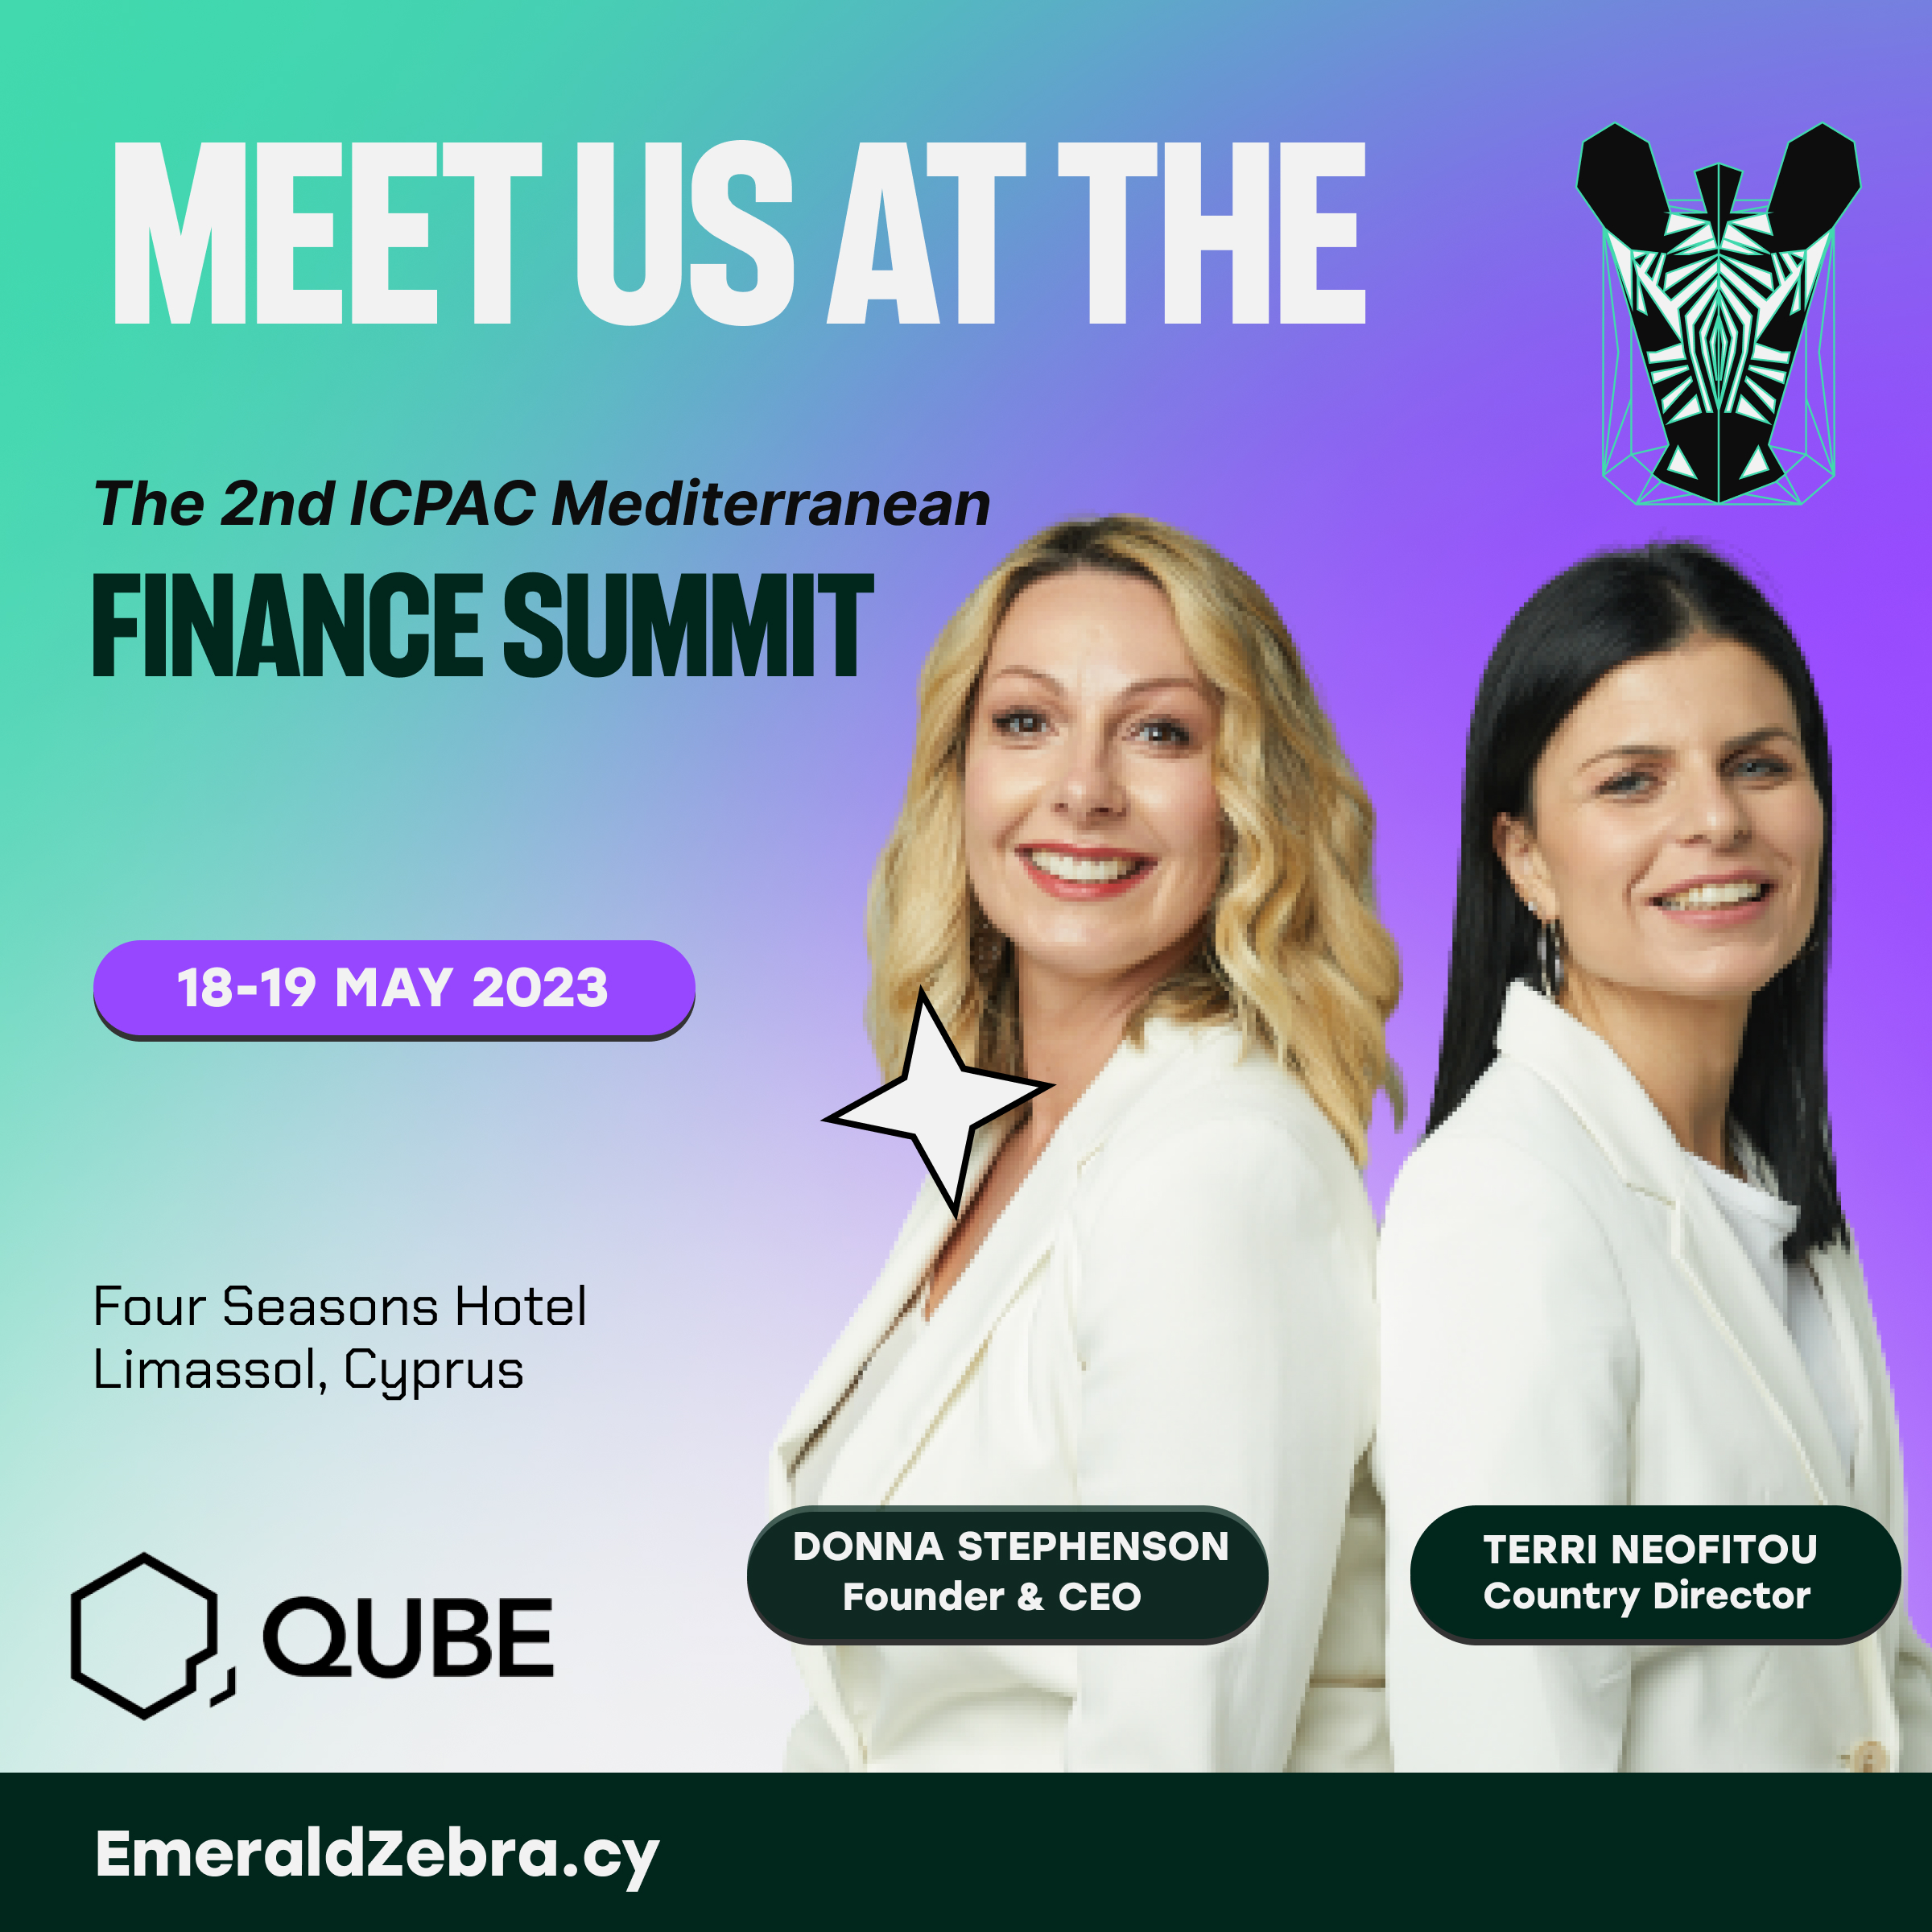 The 2nd ICPAC Mediterranean Finance Summit - Emerald Zebra